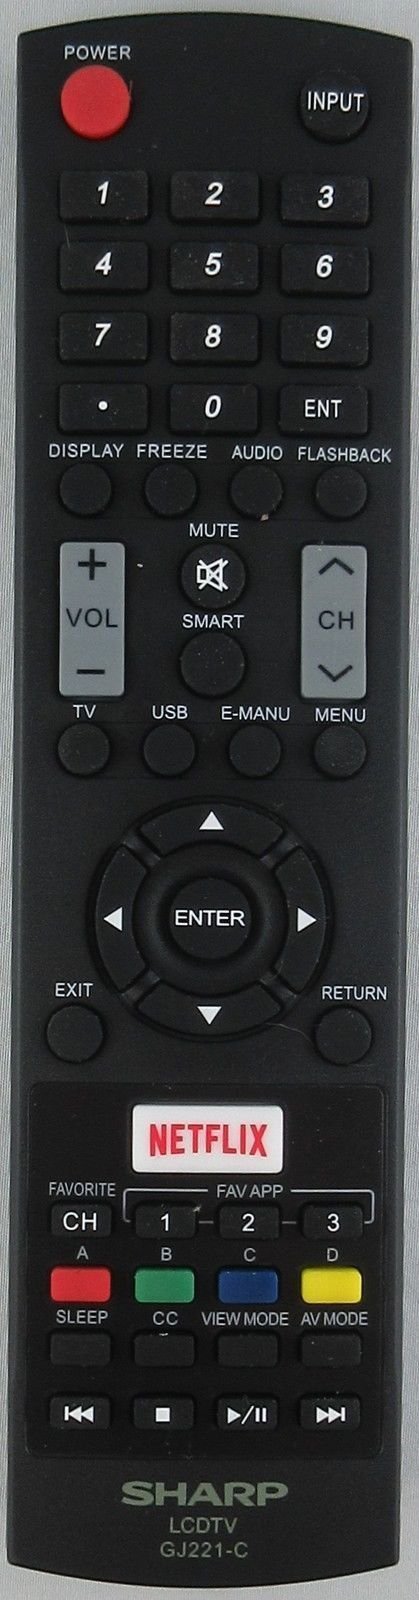 Sharp GJ221-C LED TV Remote for Lc-65le654u Lc-55le653u Lc-48le653u Lc-43le653u